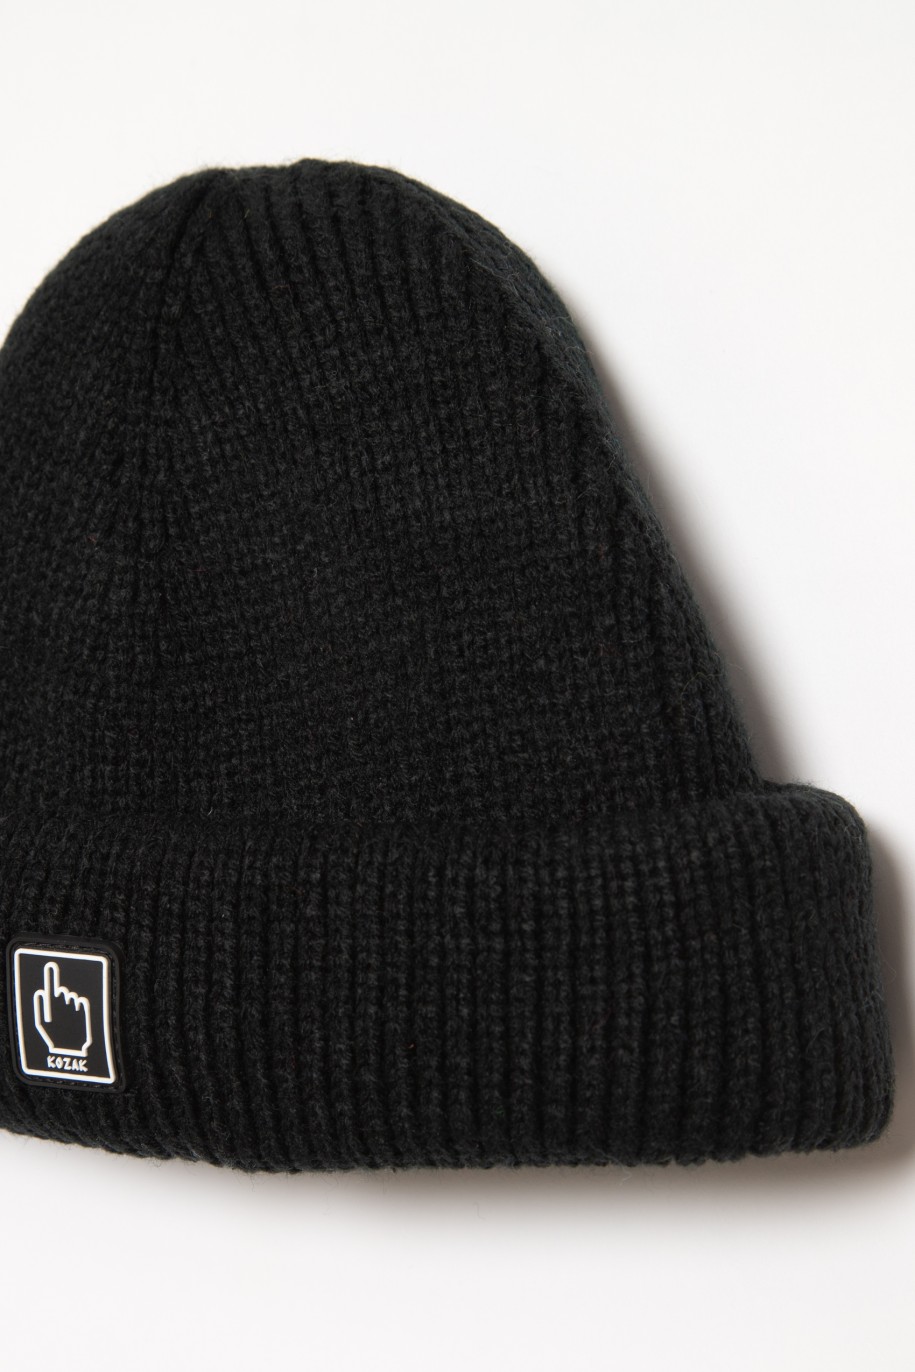 Czarna czapka dla chłopaka - 35271